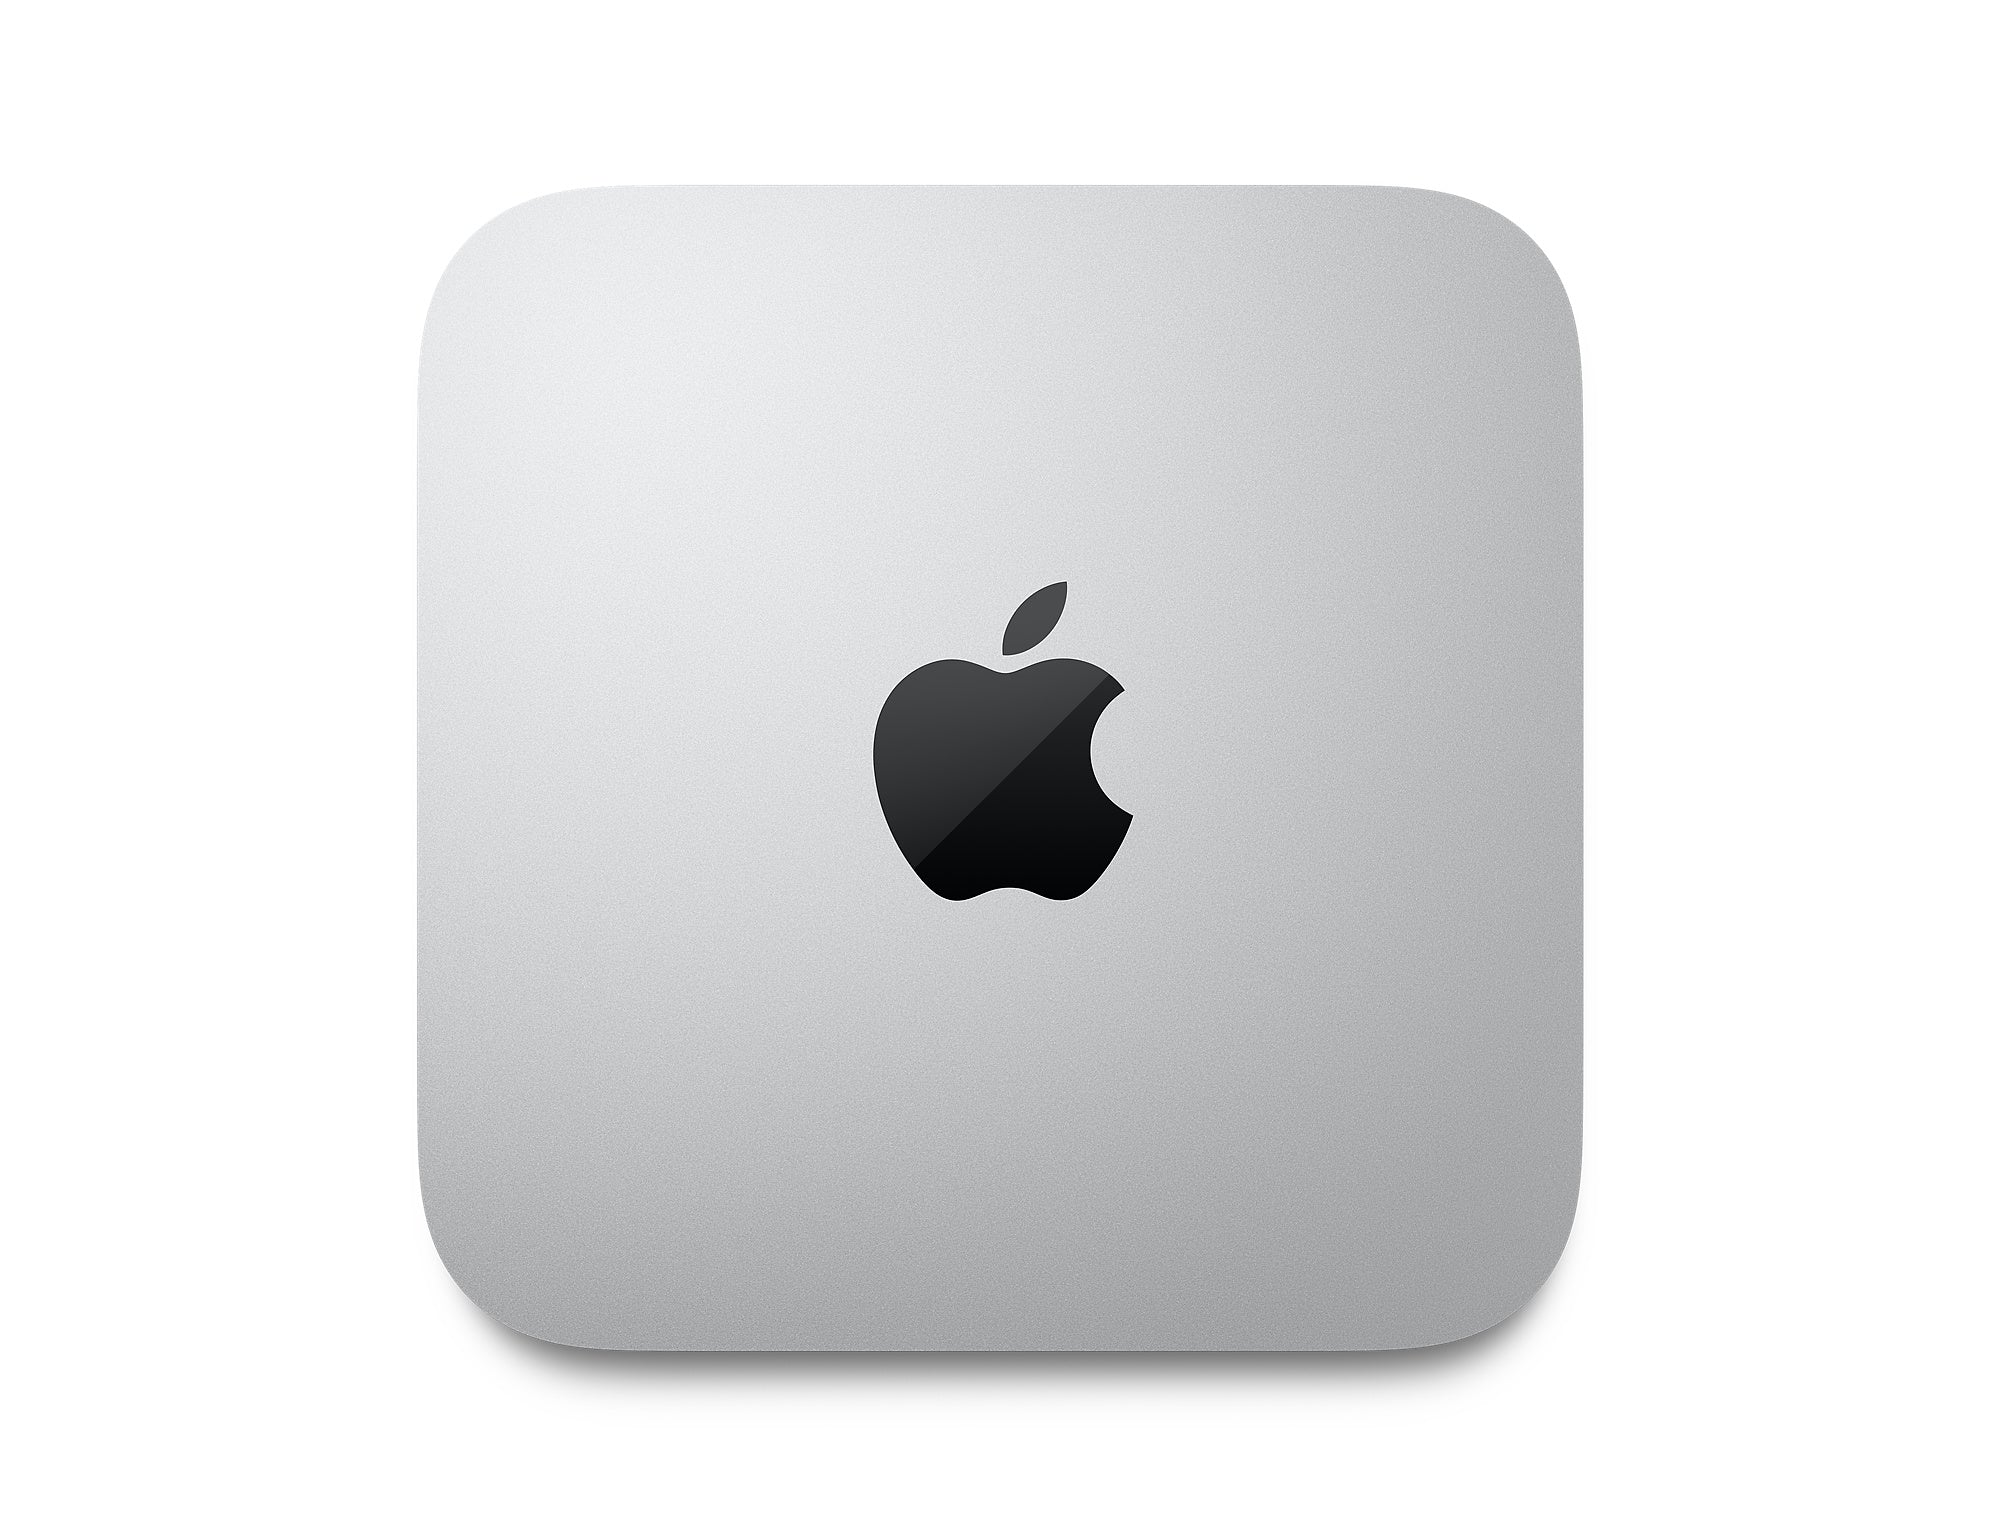 Mac mini: Apple M1 chip with 8 core CPU and 8 core GPU, 512GB SSD